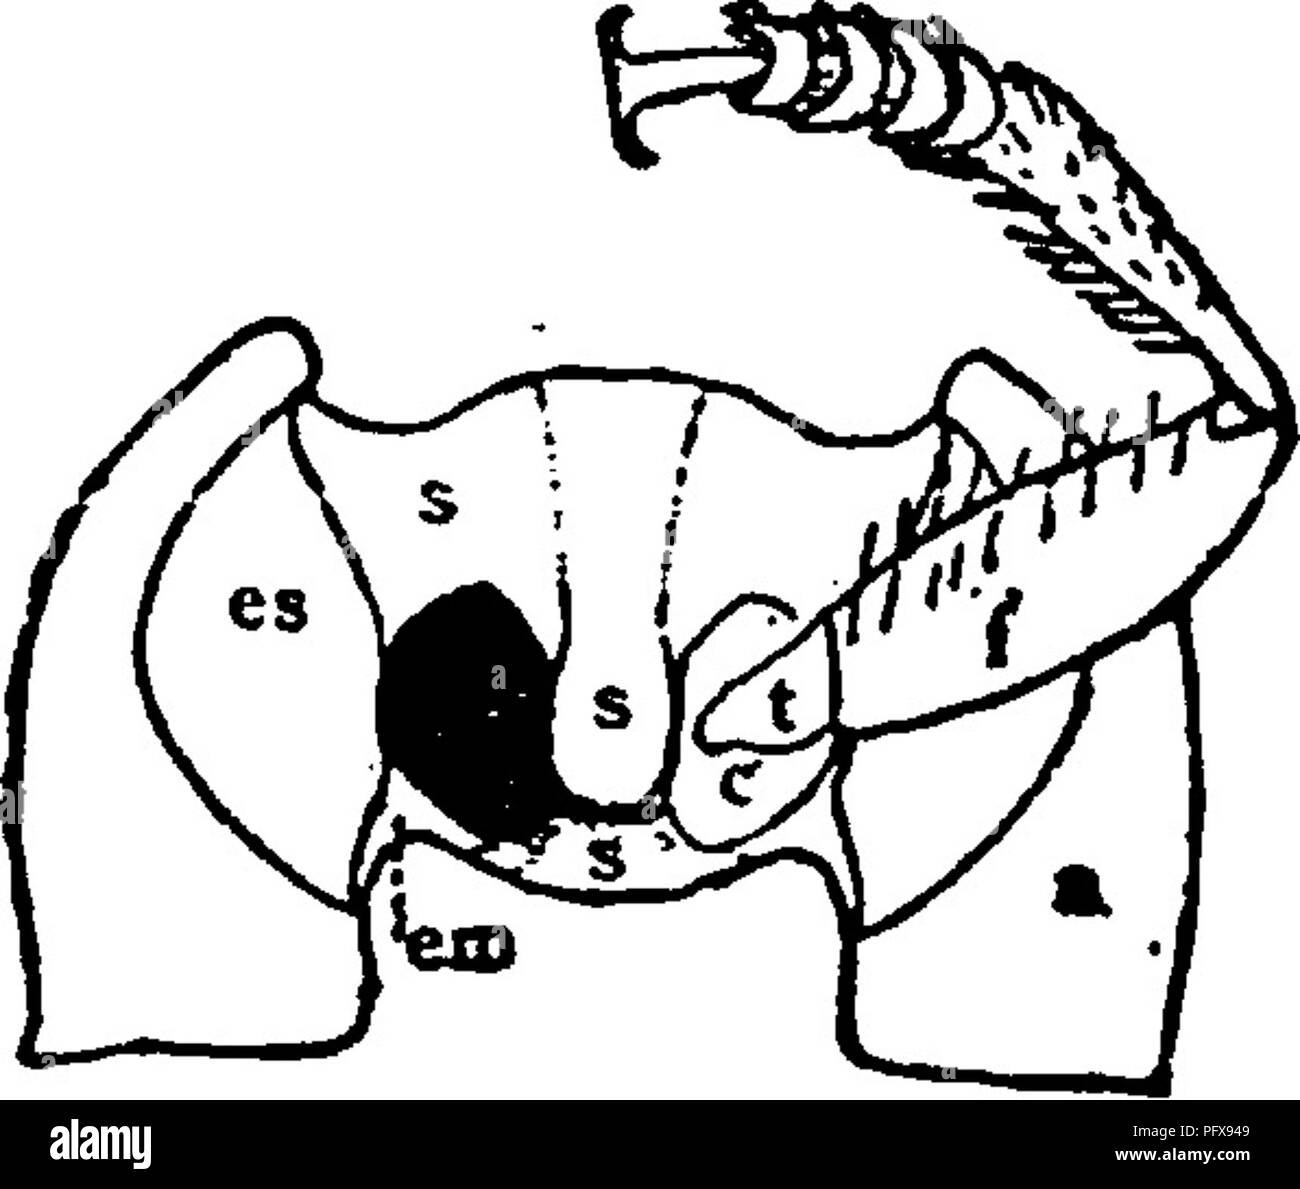 . Un manual para el estudio de los insectos. Los insectos. 504 EL ESTUDIO DE LOS INSECTOS, nes por una sutura que se extiende transversalmente a corta distancia delante de la caudal ; el margen más pequeño que bordea el sclerite coxse posterior en la parte delantera y a menudo pasa entre ellos se denomina el ante-coxal pedazo del metasterum (Fig. 6ii, i6 /^). Las aberturas de los segmentos torácico en el que las piernas se en- serted se denominan th^coxal cavidades. Se utilizan mucho en los clásicos- ficación de los escarabajos de la forma de las cavidades del coxal protórax. Cuando el epimera del protórax detrás de la extensión y alcance coxse Foto de stock